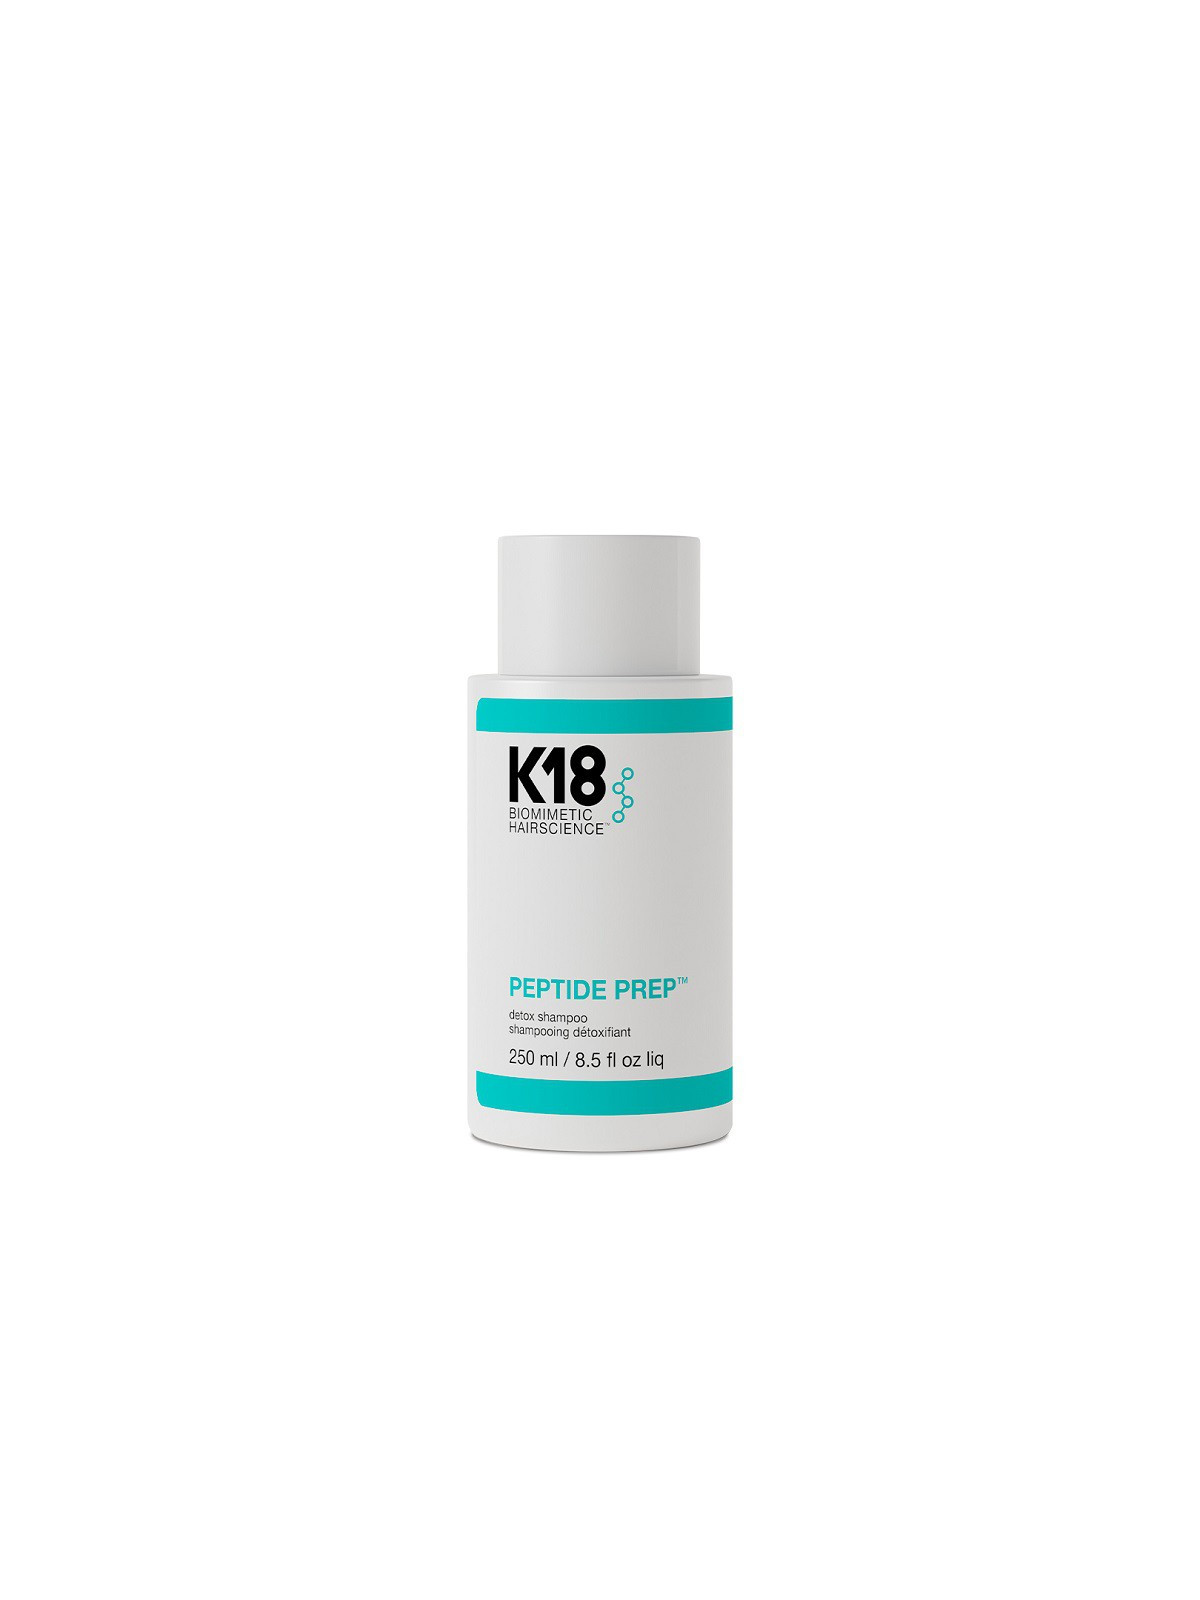 Giliai valantis šampūnas K18 Peptide Prep Detox Shampoo 250ml